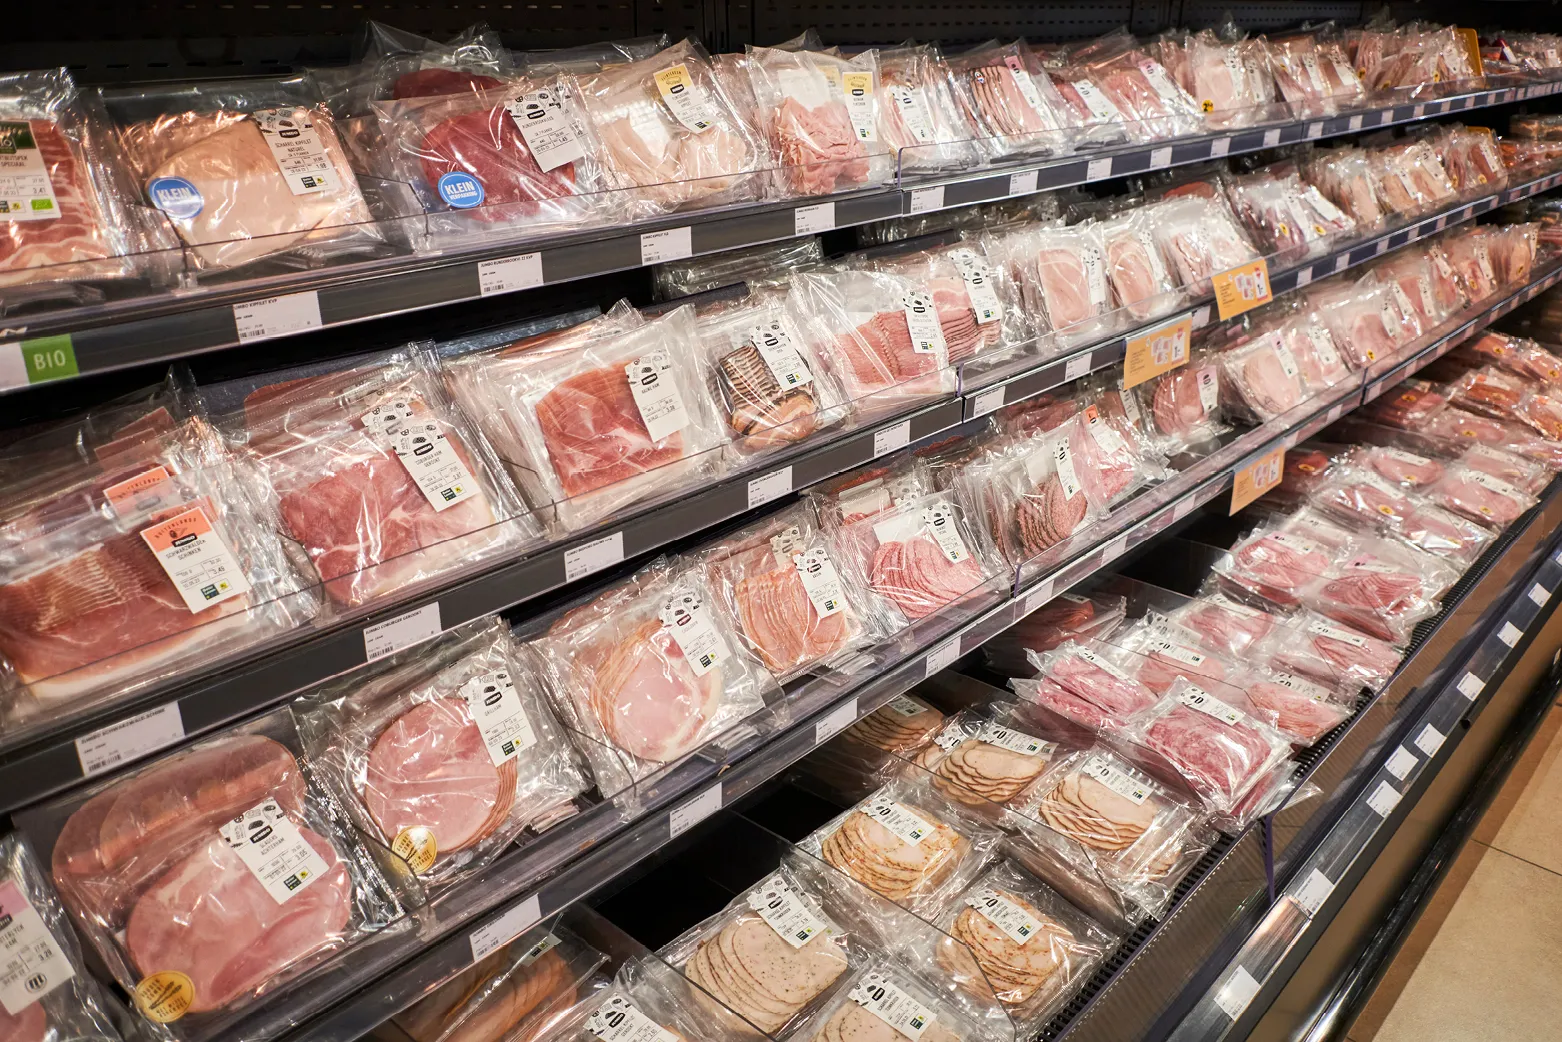 Beeld: supermarktschap met veel vlees